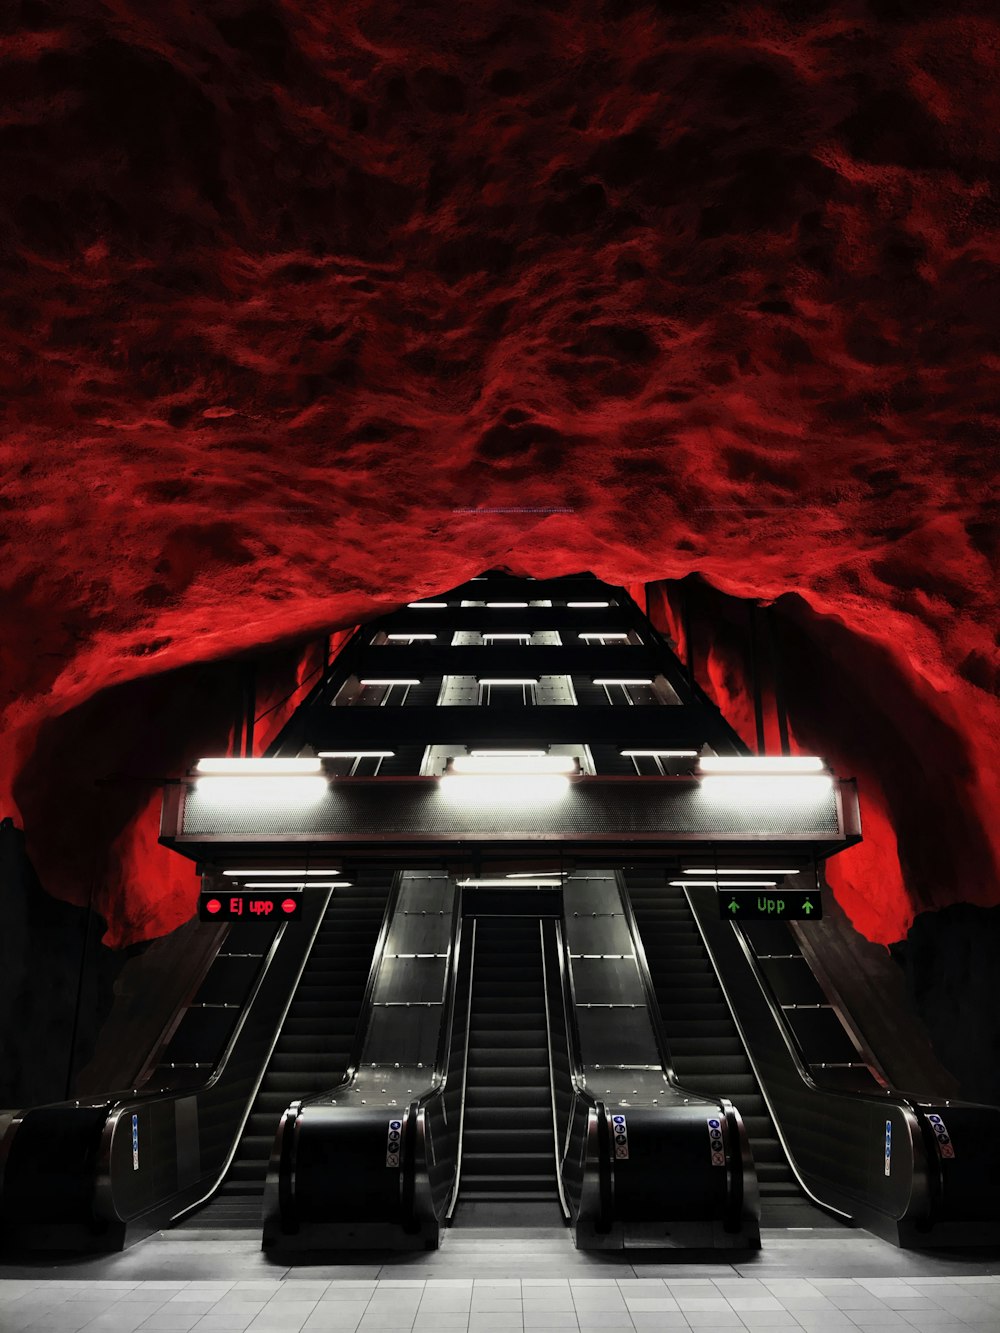 Un escalator dans une station de métro aux murs rouges